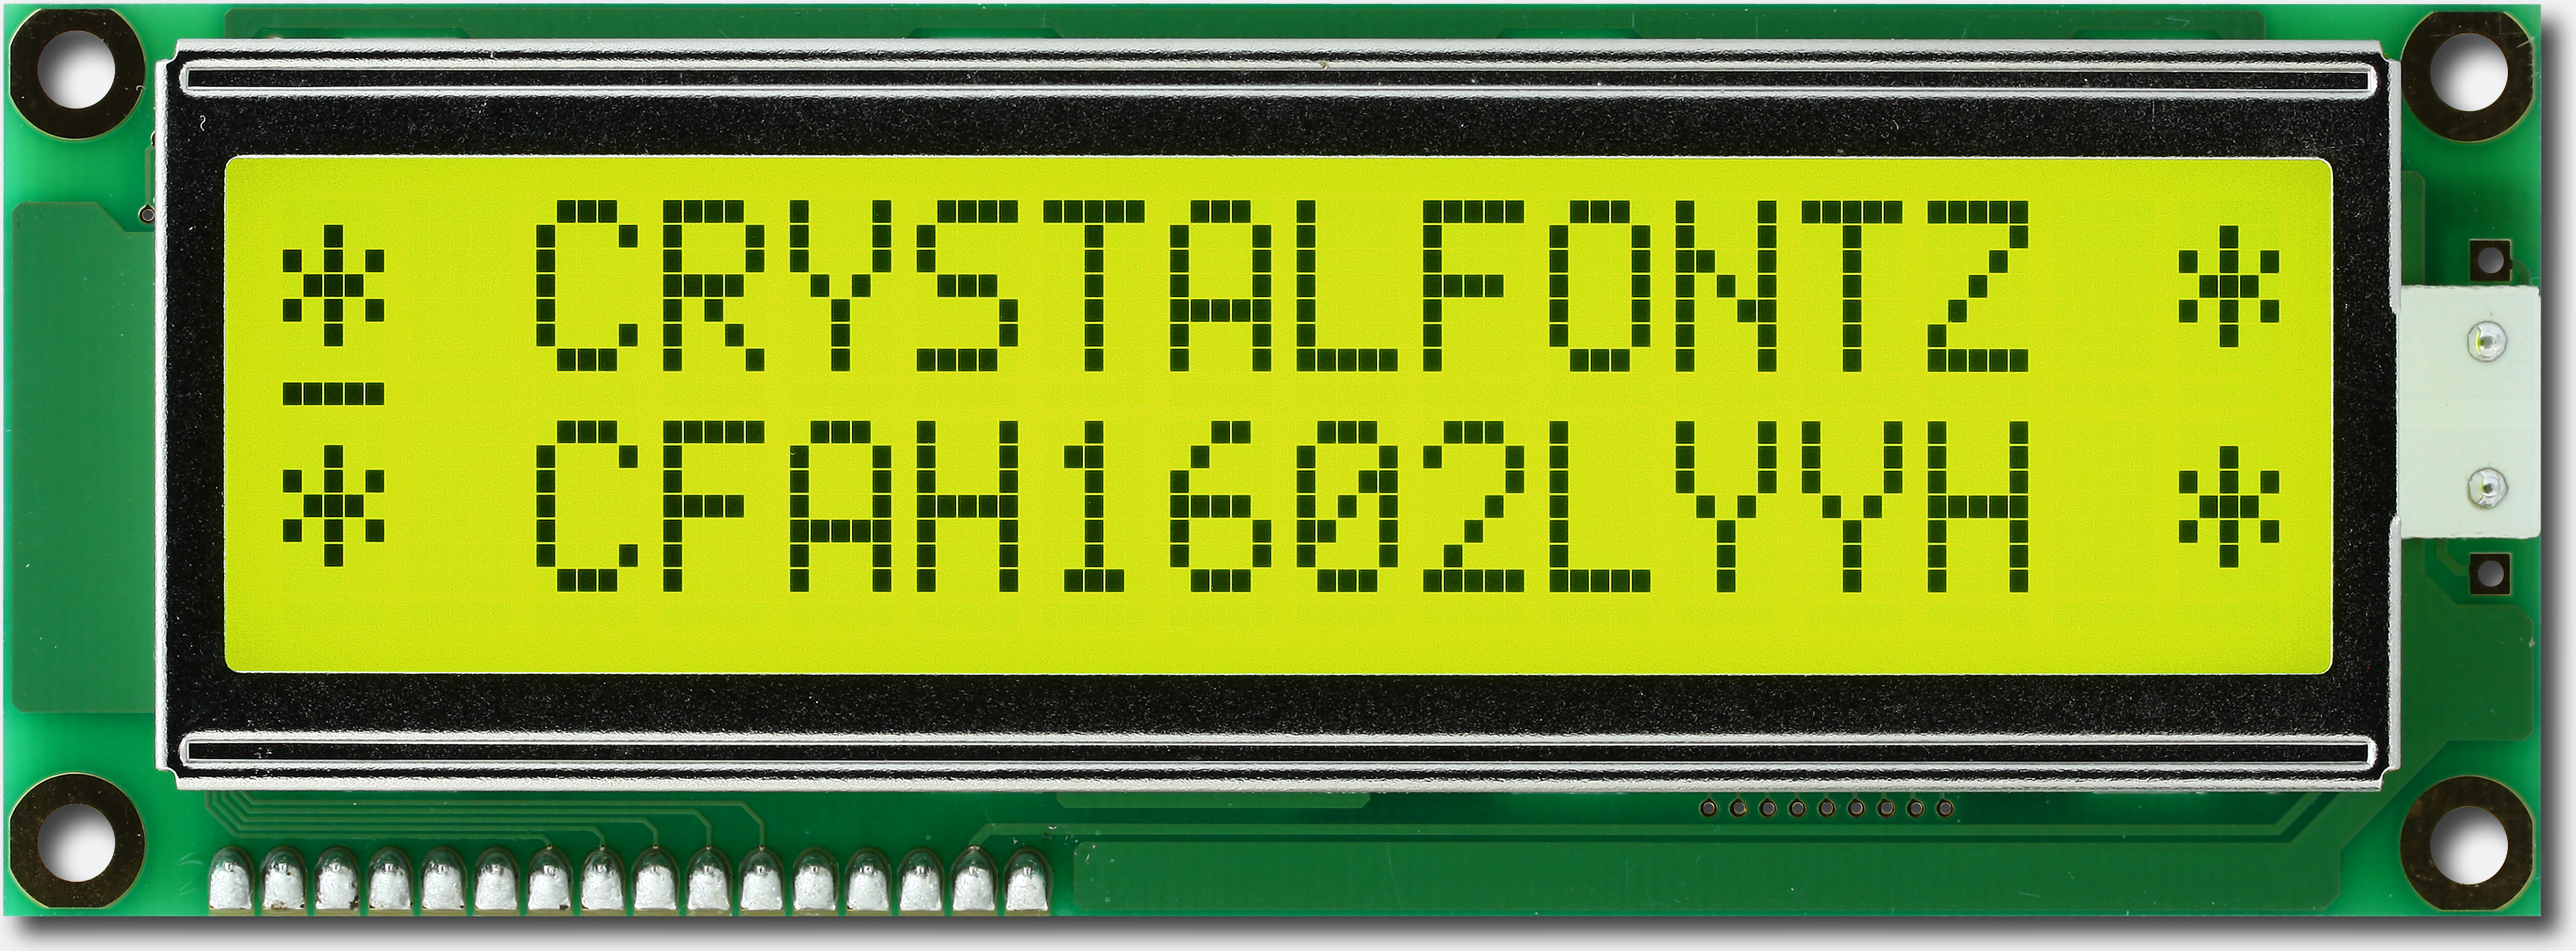 Crystalfontz Transflective Yellow 16x2 Character LCD